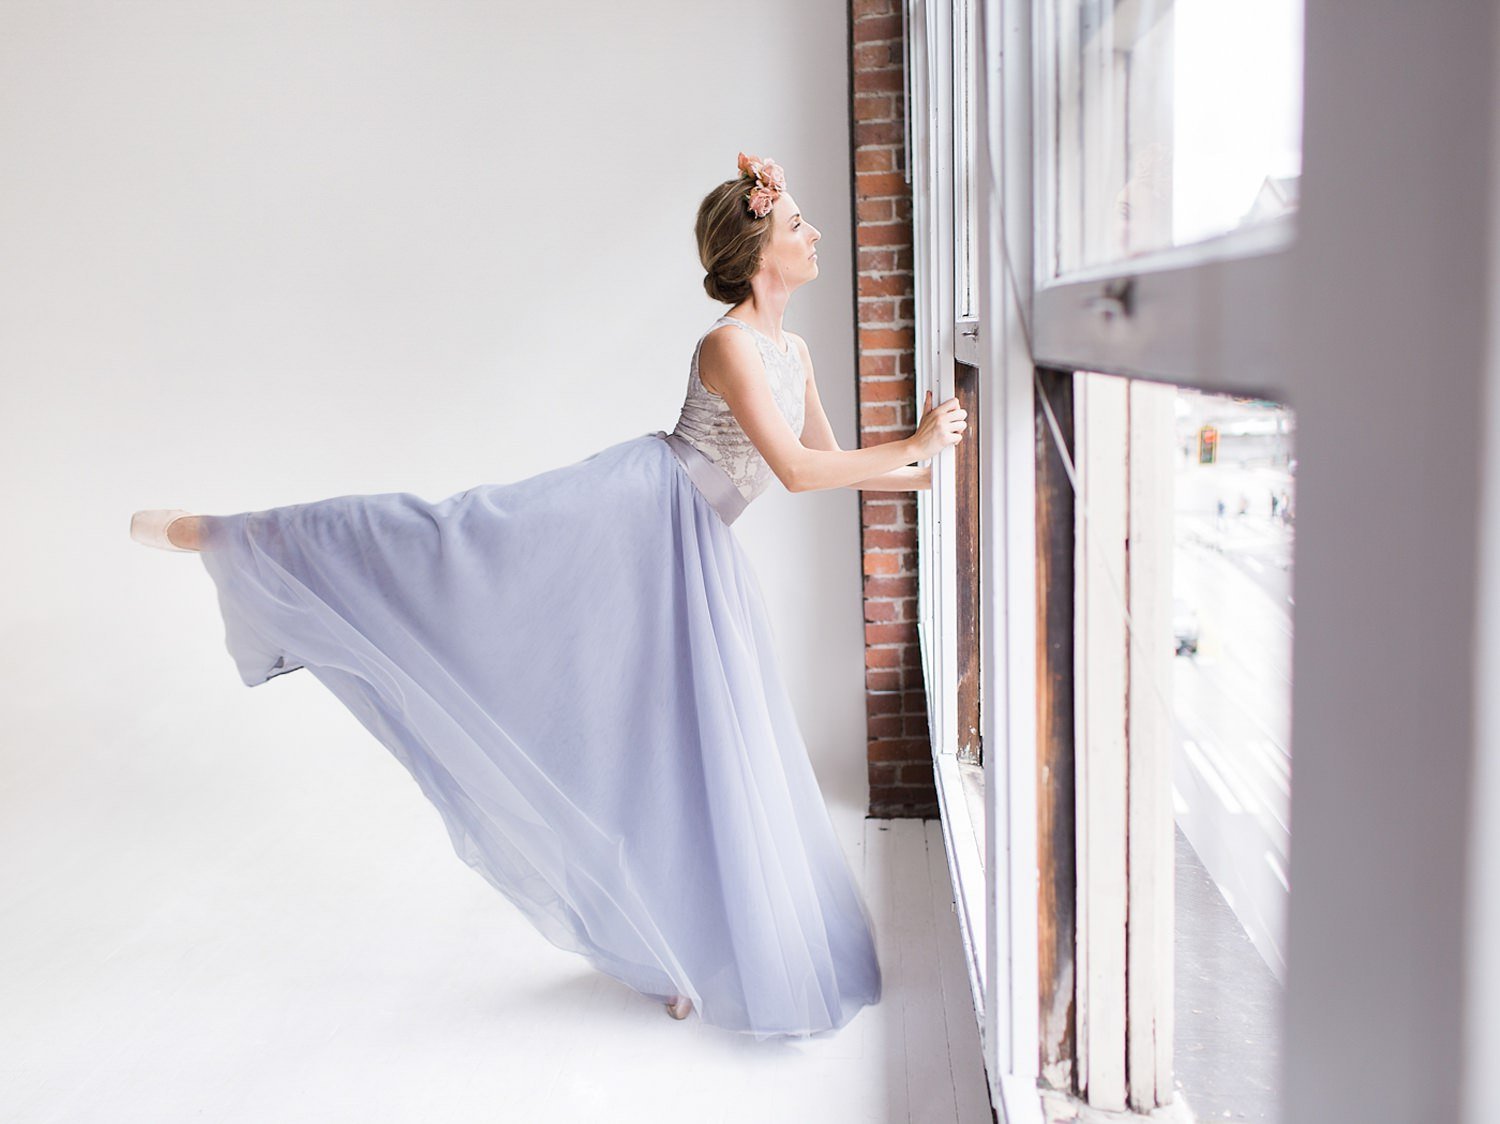 ballet-inspired-wedding-shoot-8.jpg